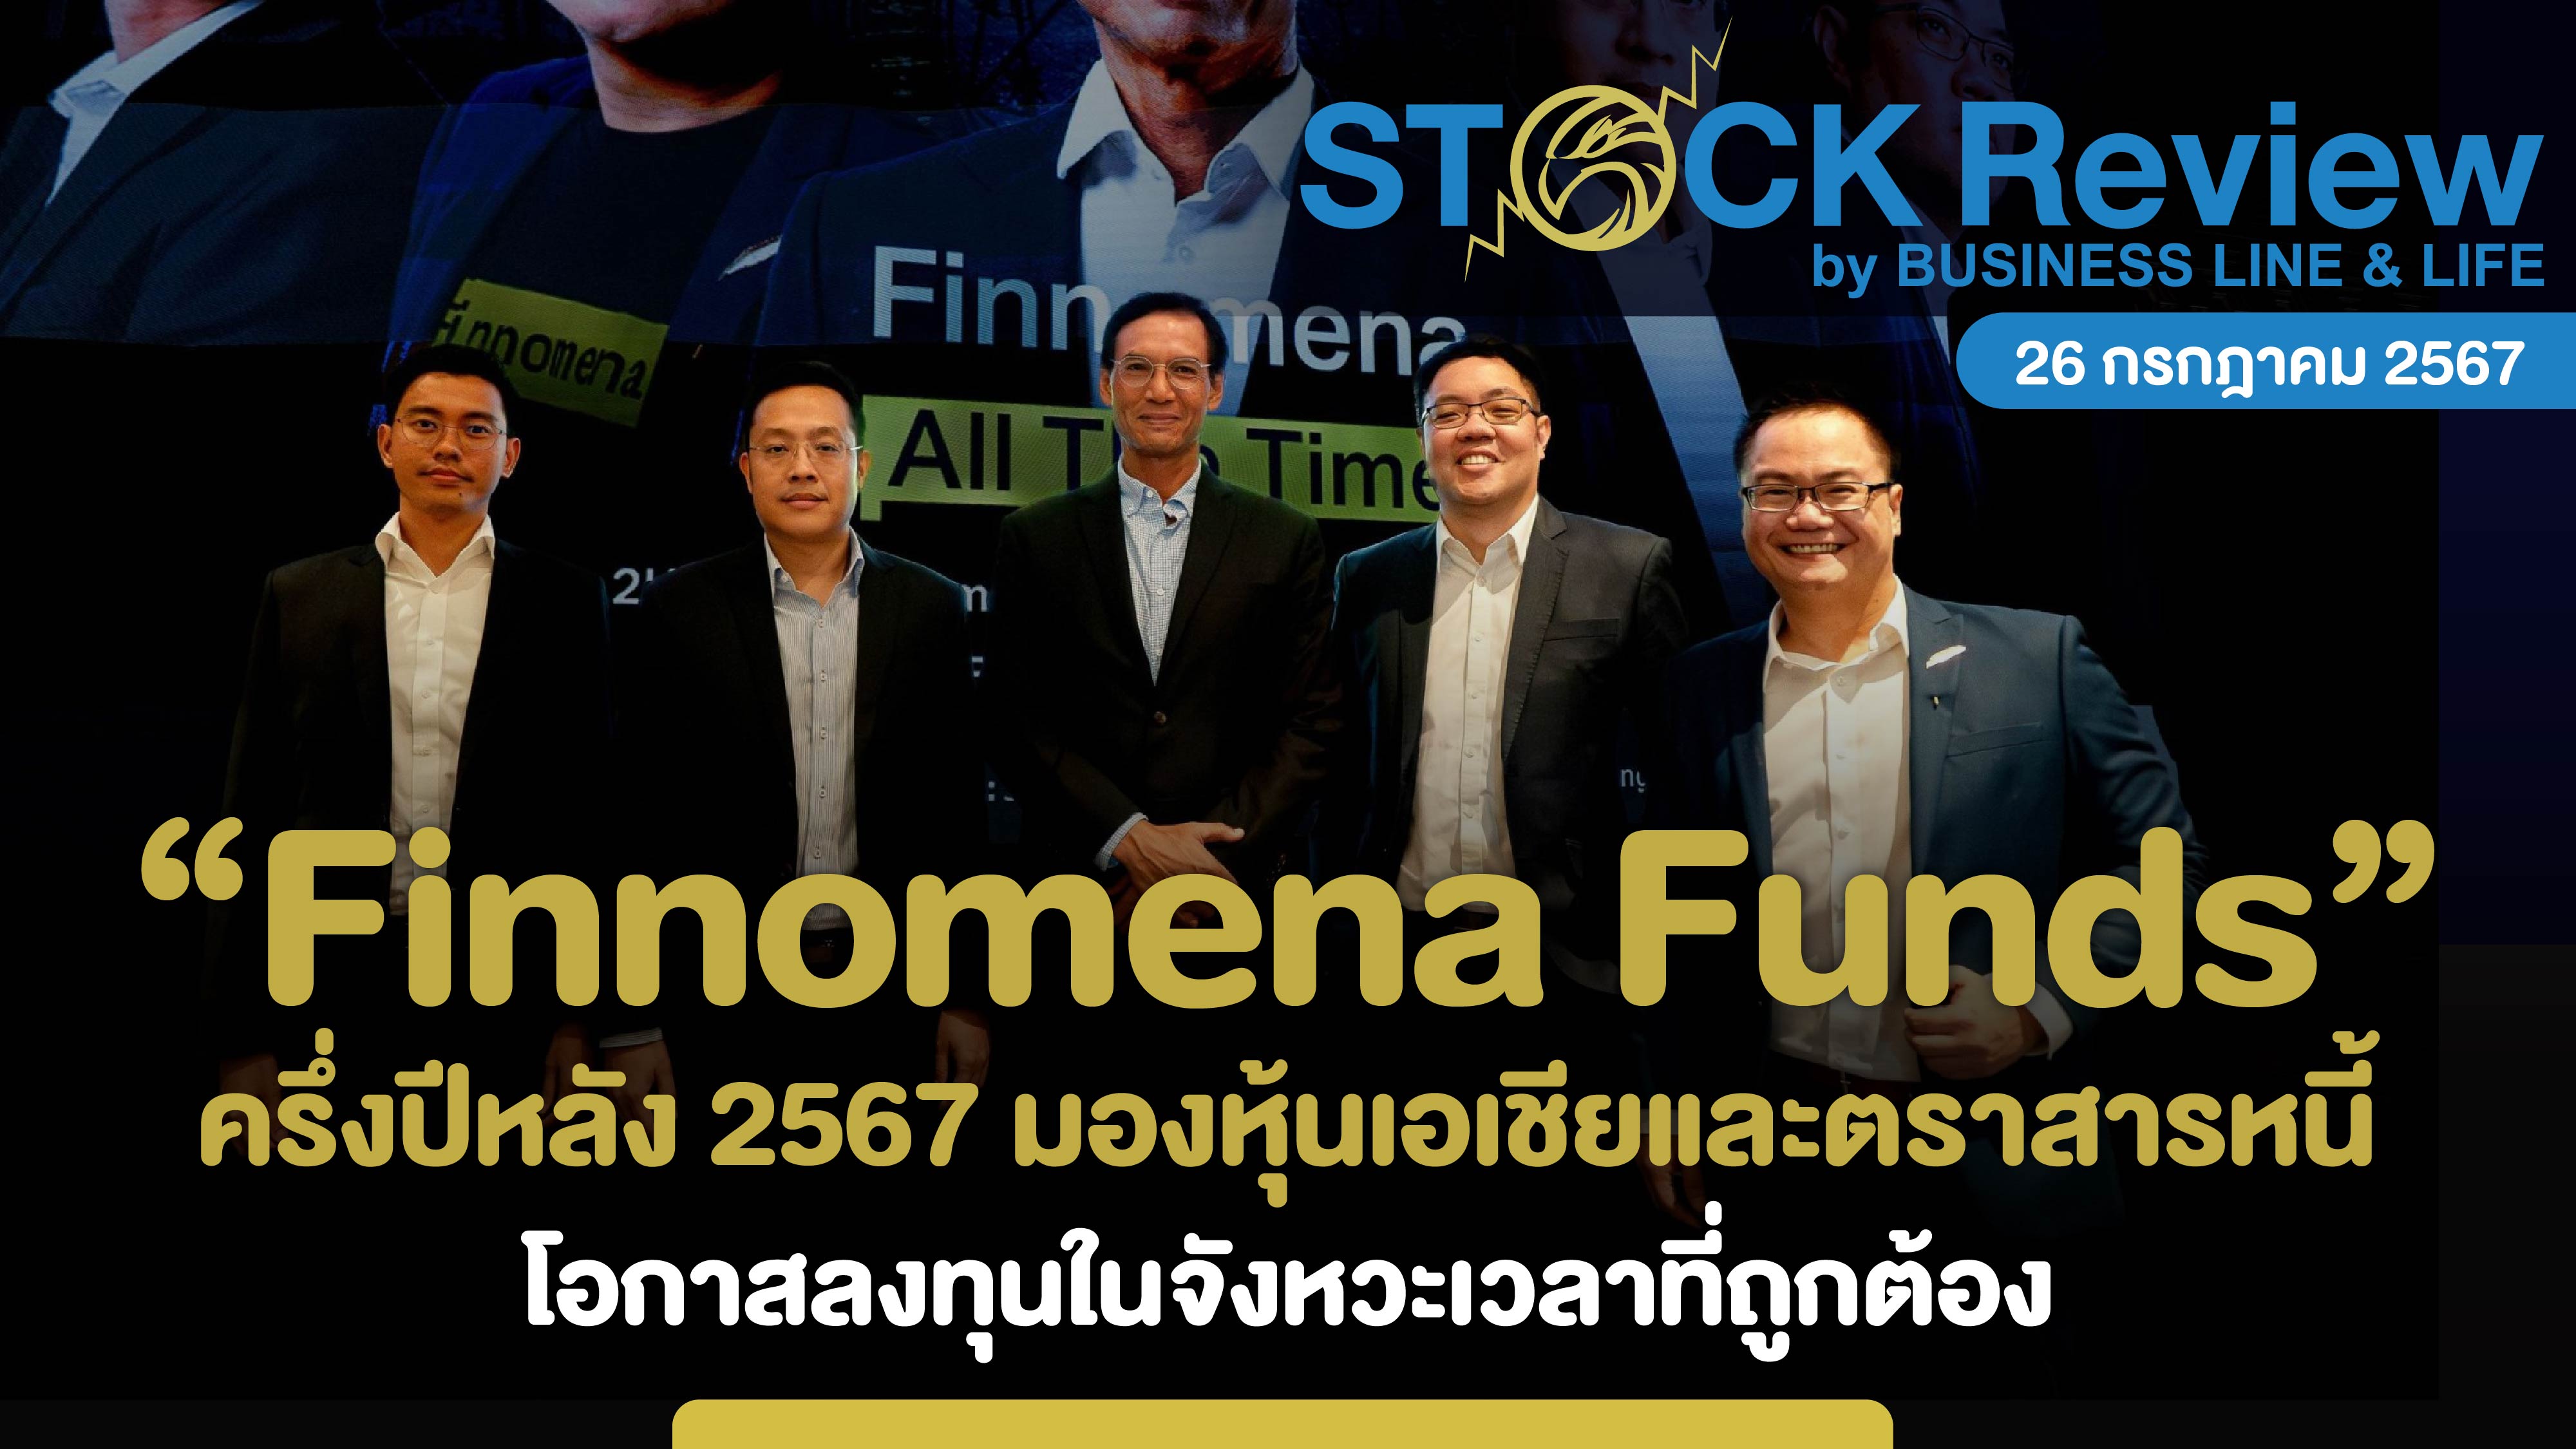 Finnomena Funds ครึ่งปีหลัง 2567 มองหุ้นเอเชียและตราสารหนี้ โอกาสลงทุนในจังหวะเวลาที่ถูกต้อง